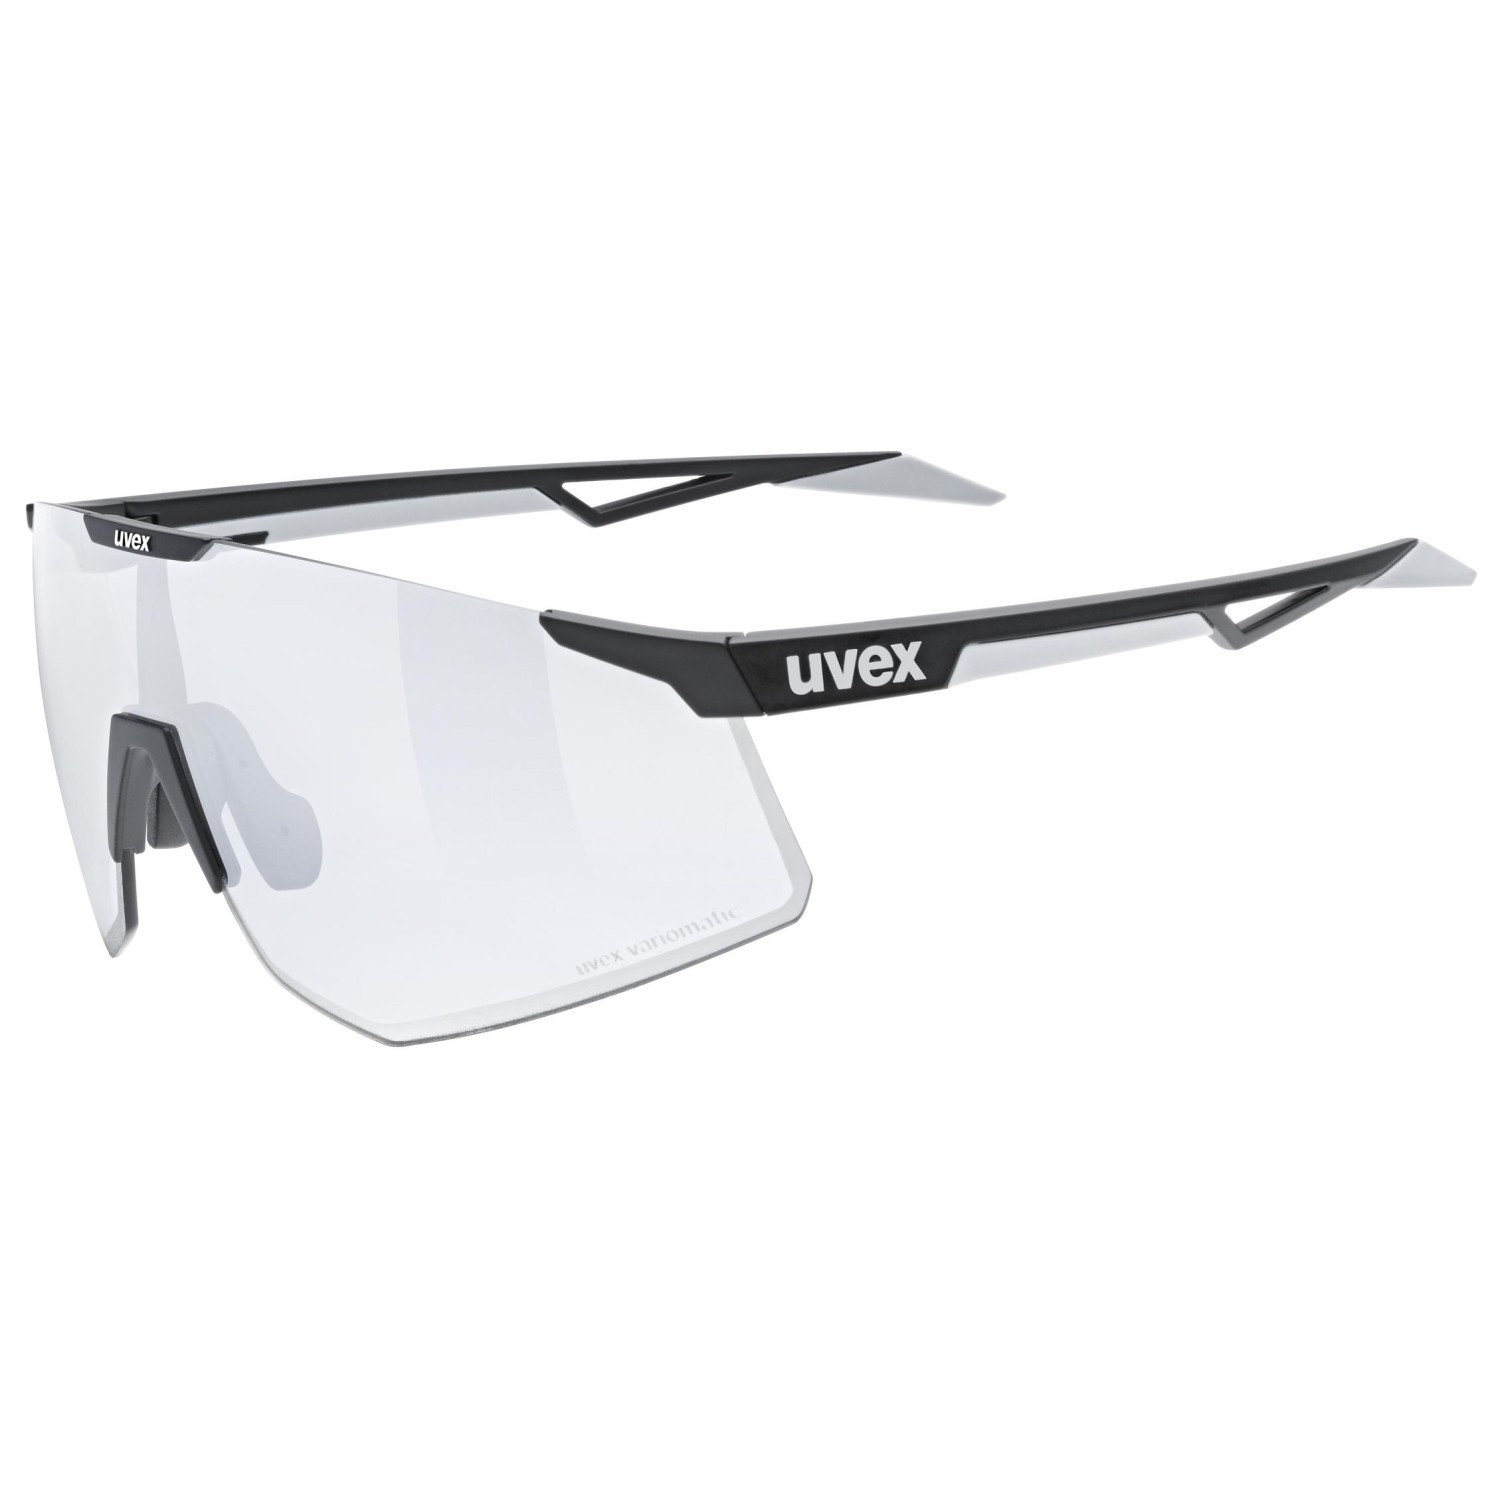 Велосипедные очки Uvex Pace Perform V Litemirror Cat 1, цвет Black Matt